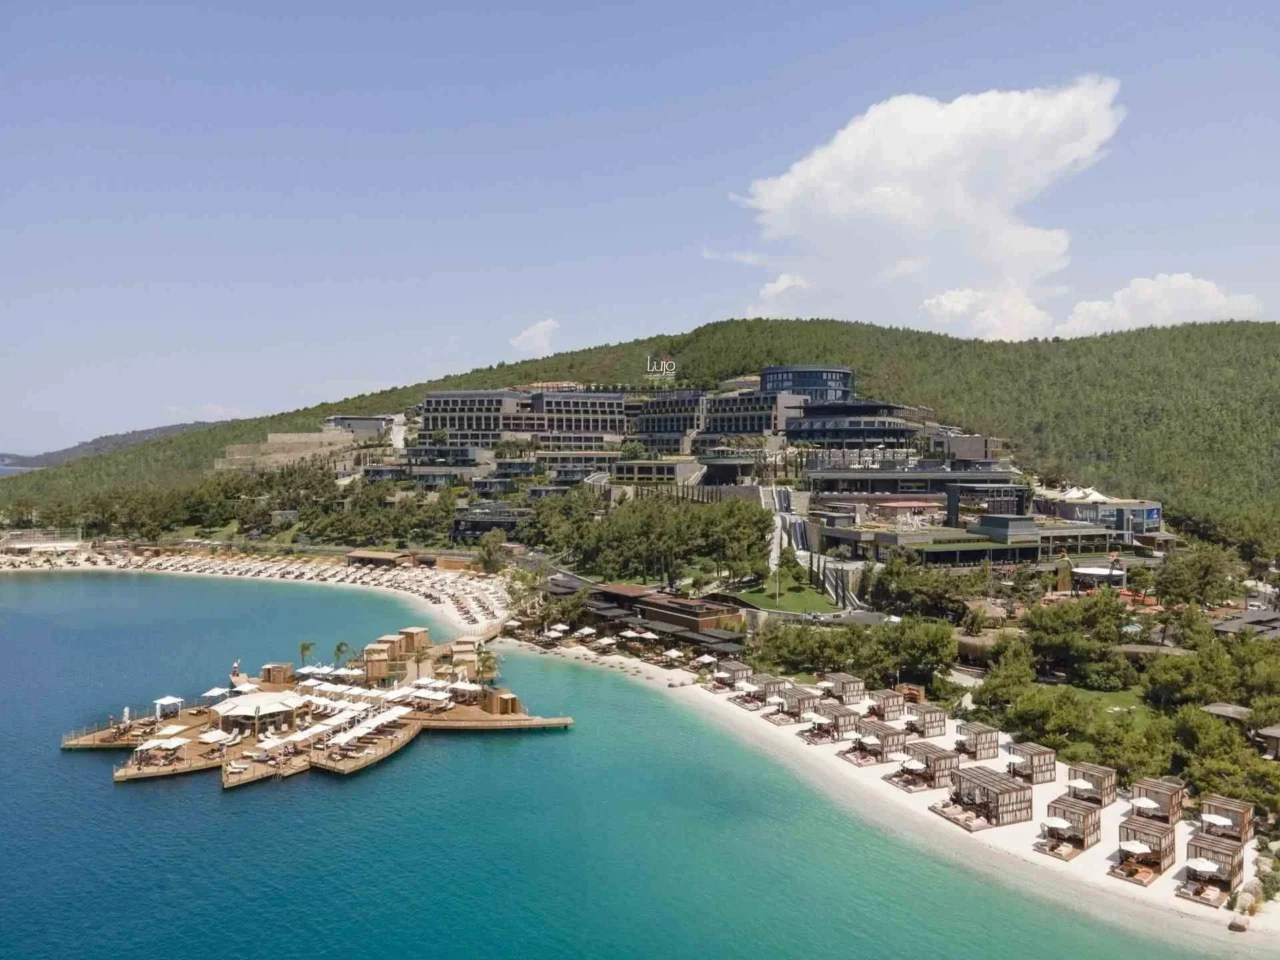 Lujo Hotel Bodrum – Genießen Sie Luxus und Komfort in der Türkei